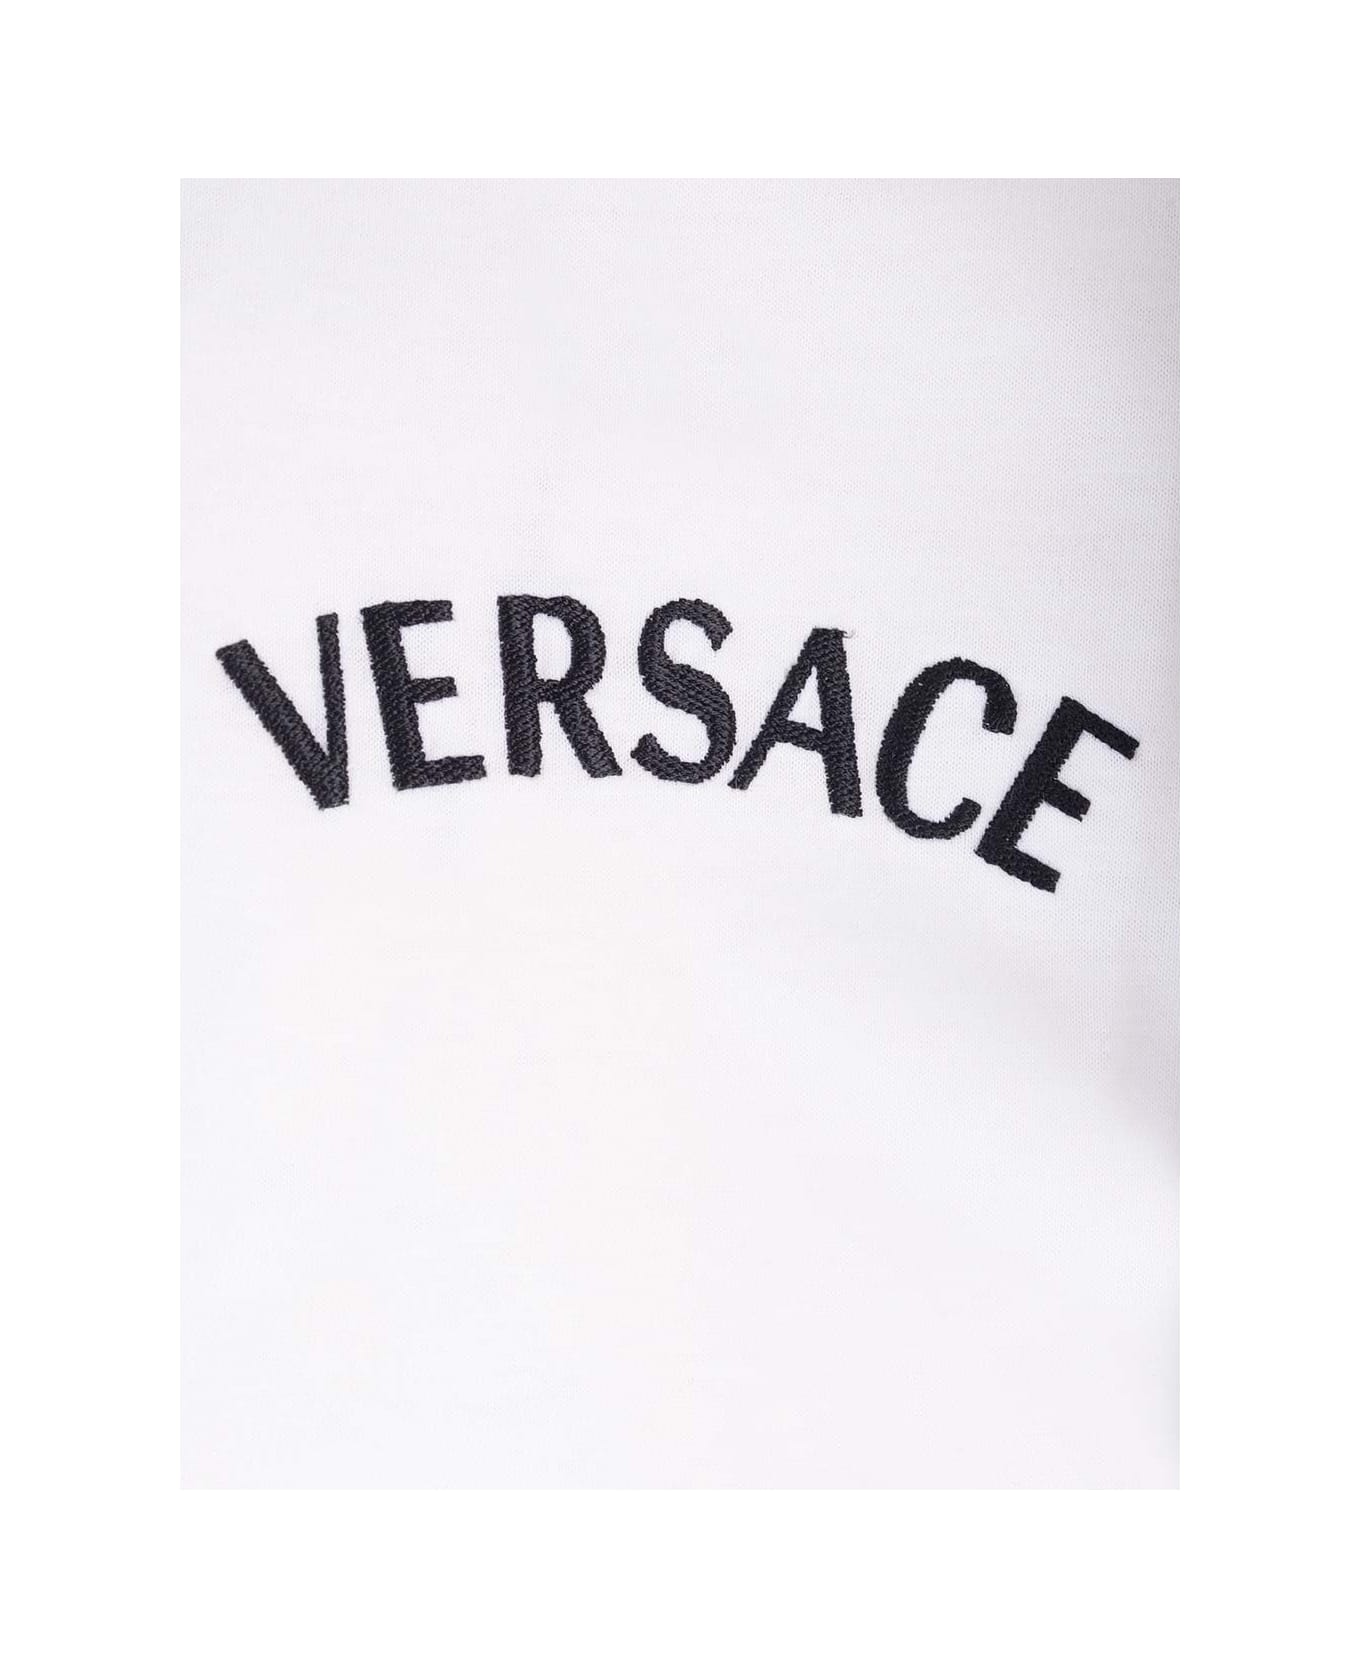 Versace T-shirt - White